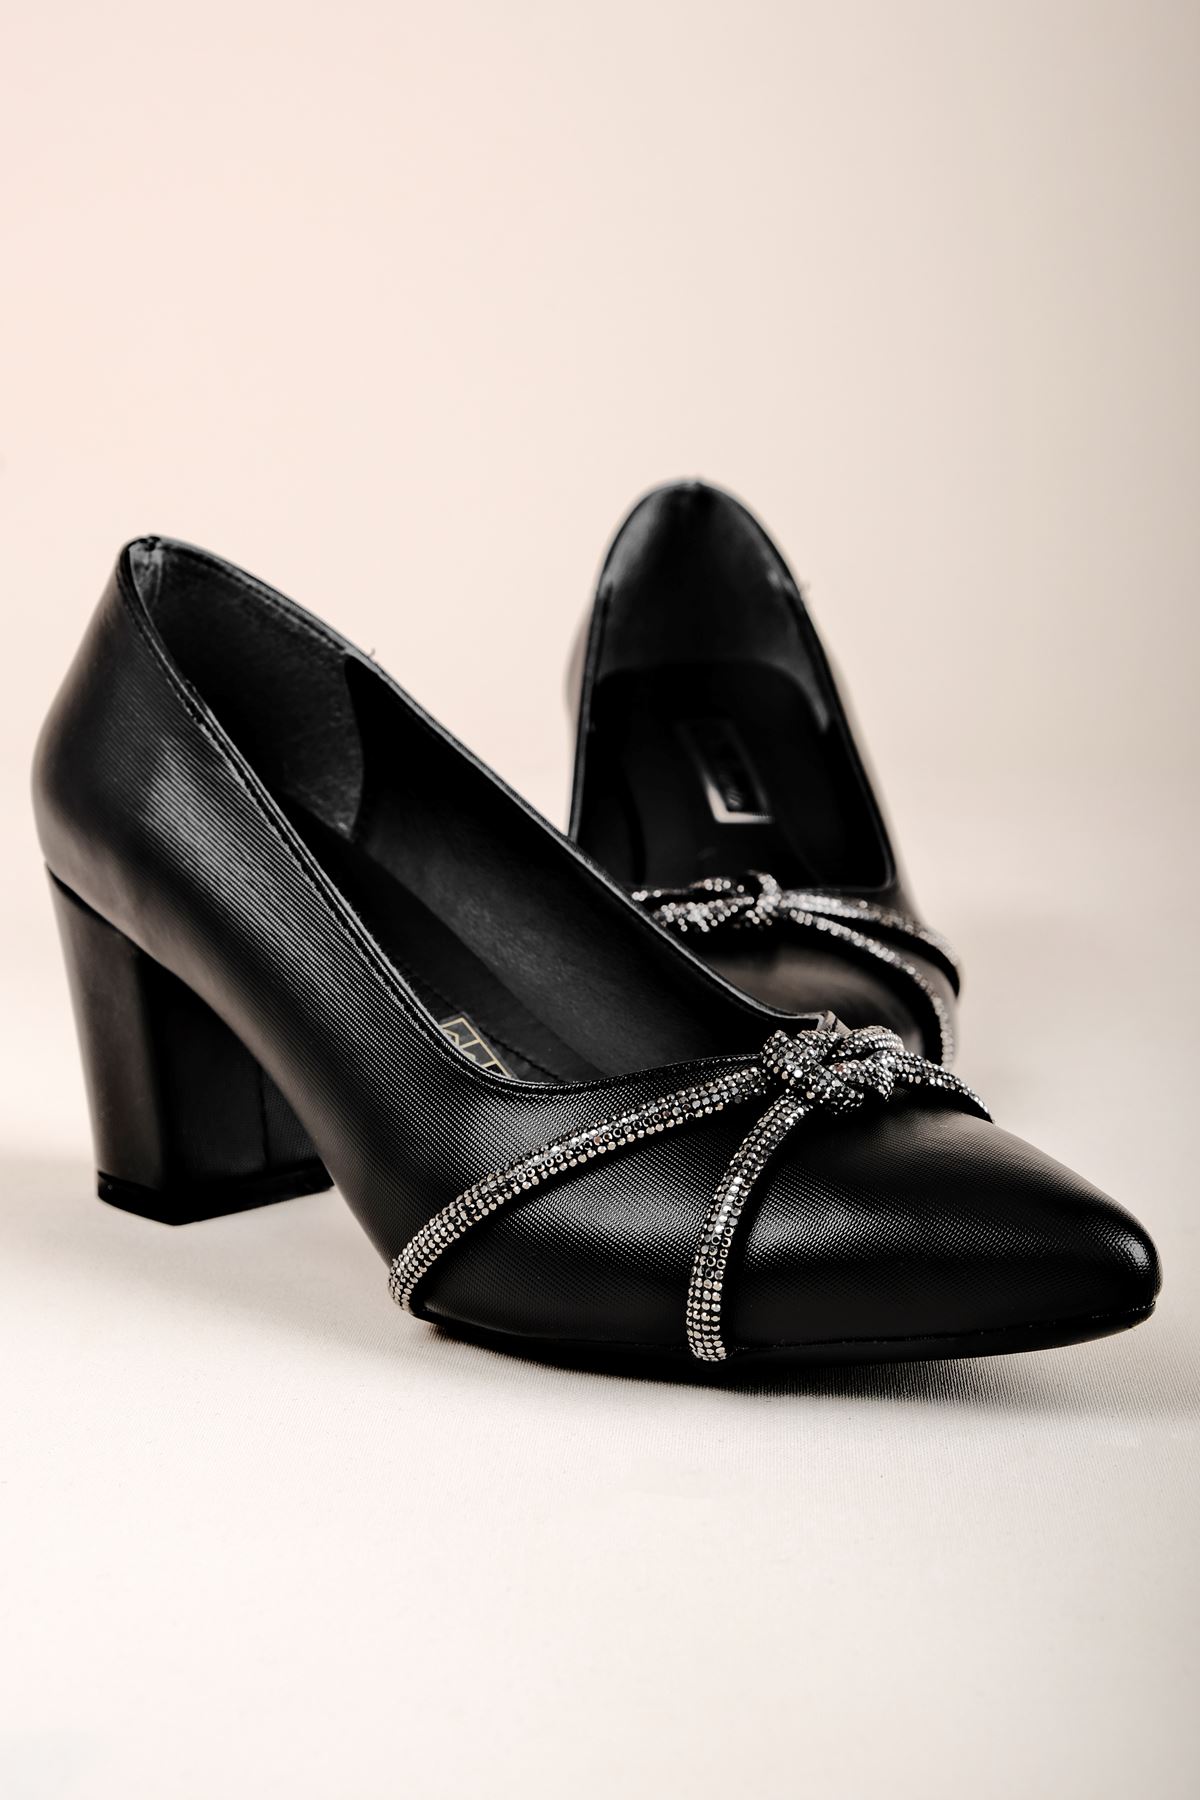 Sebari Kadın Topuklu Ayakkabı Taş detaylı-siyah